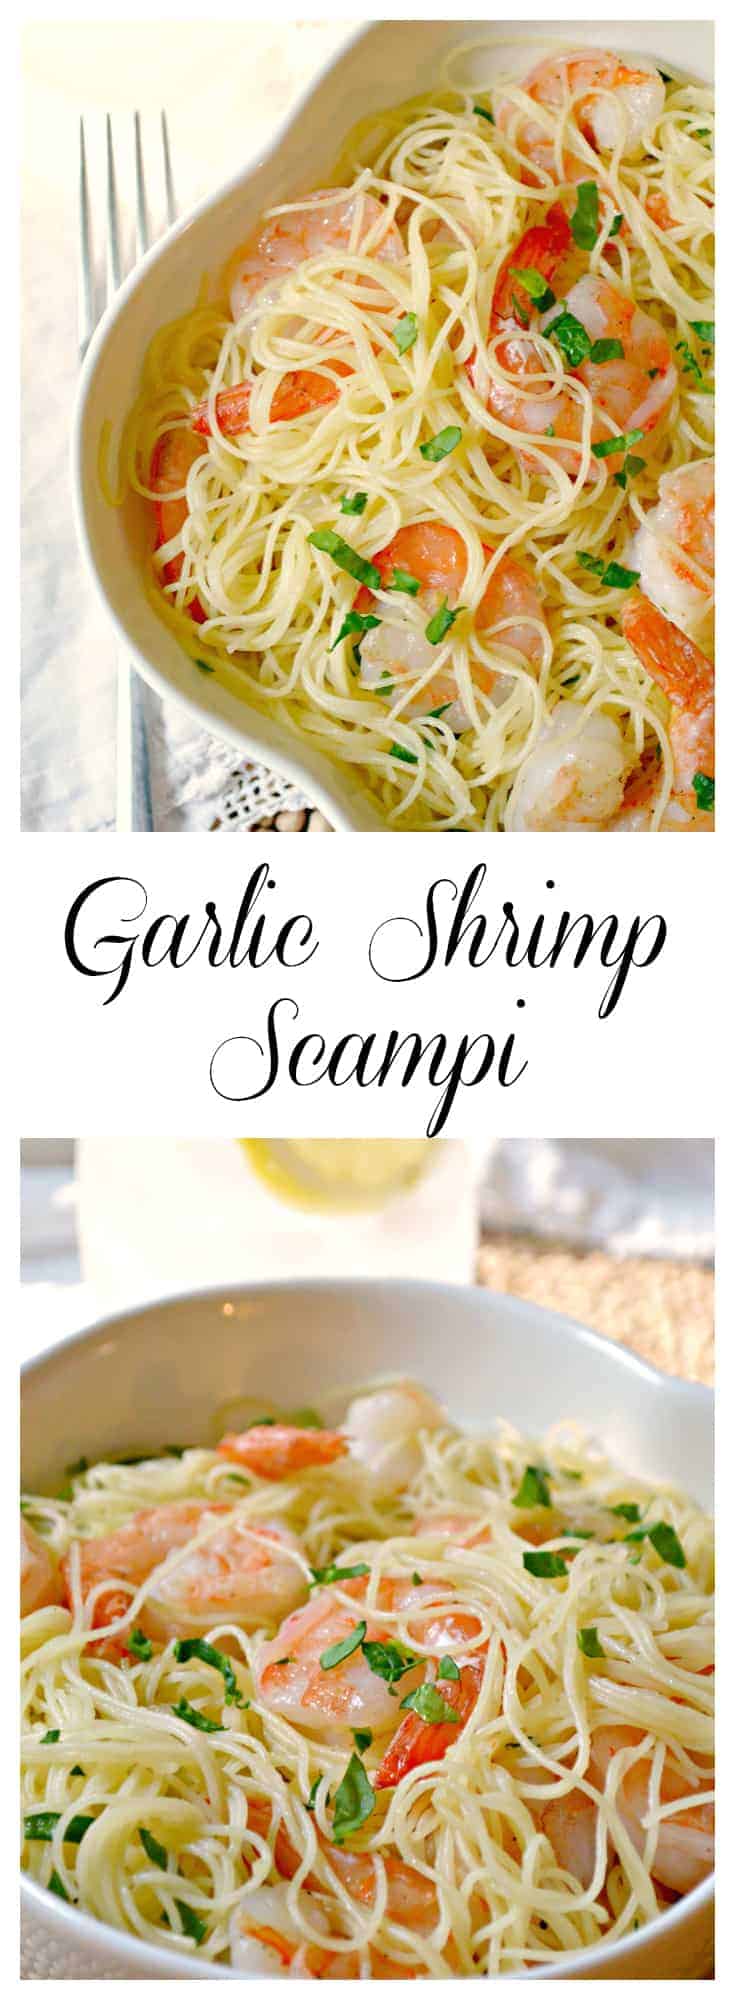 Garlic Shrimp Scampi recipe